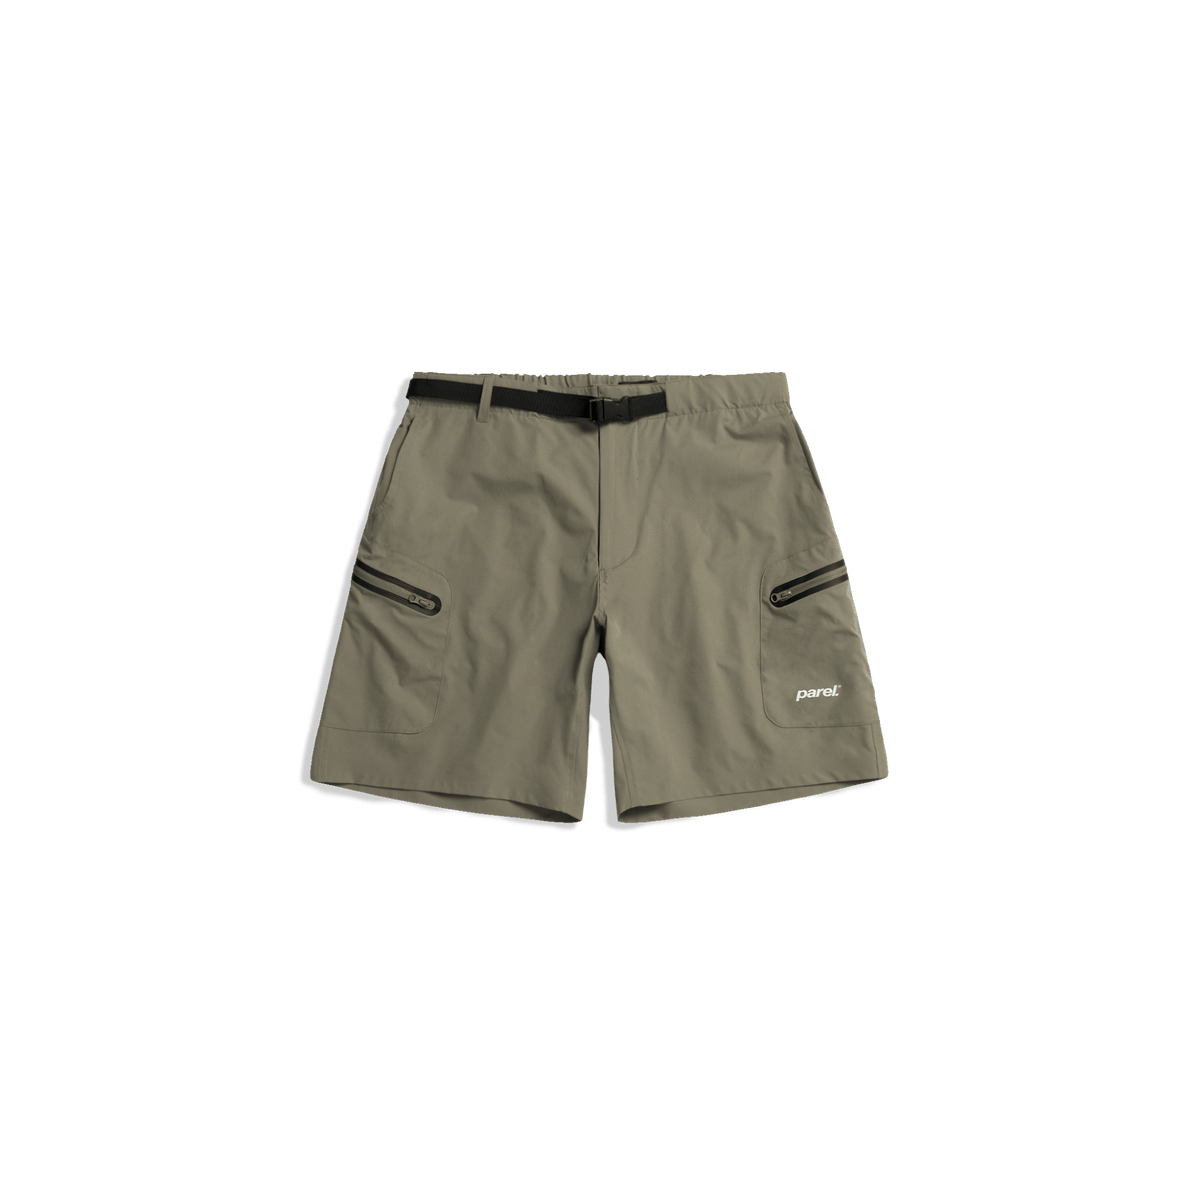 Pico Shorts - Khaki